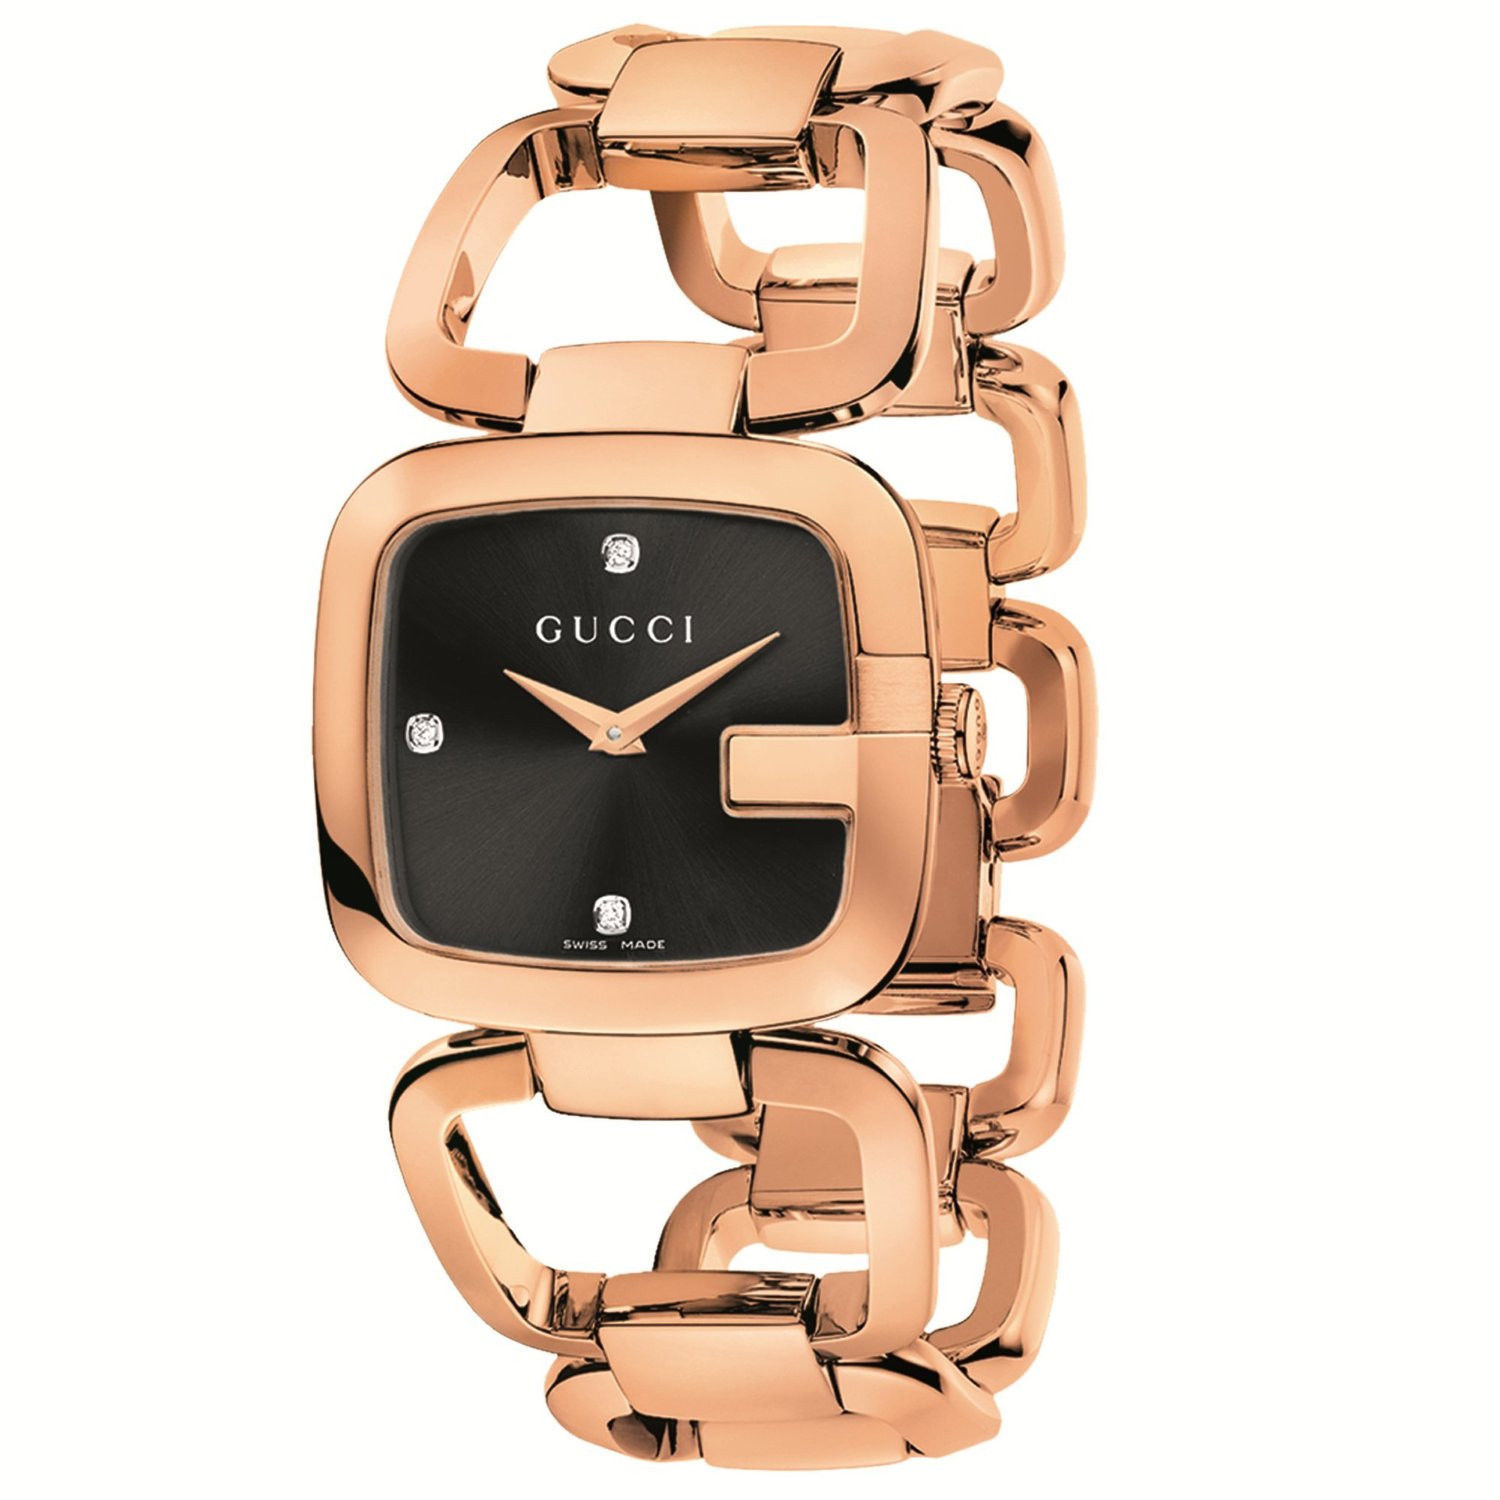 Les montres pour femme Gucci les plus luxueuses vendues récemment sur eBay !